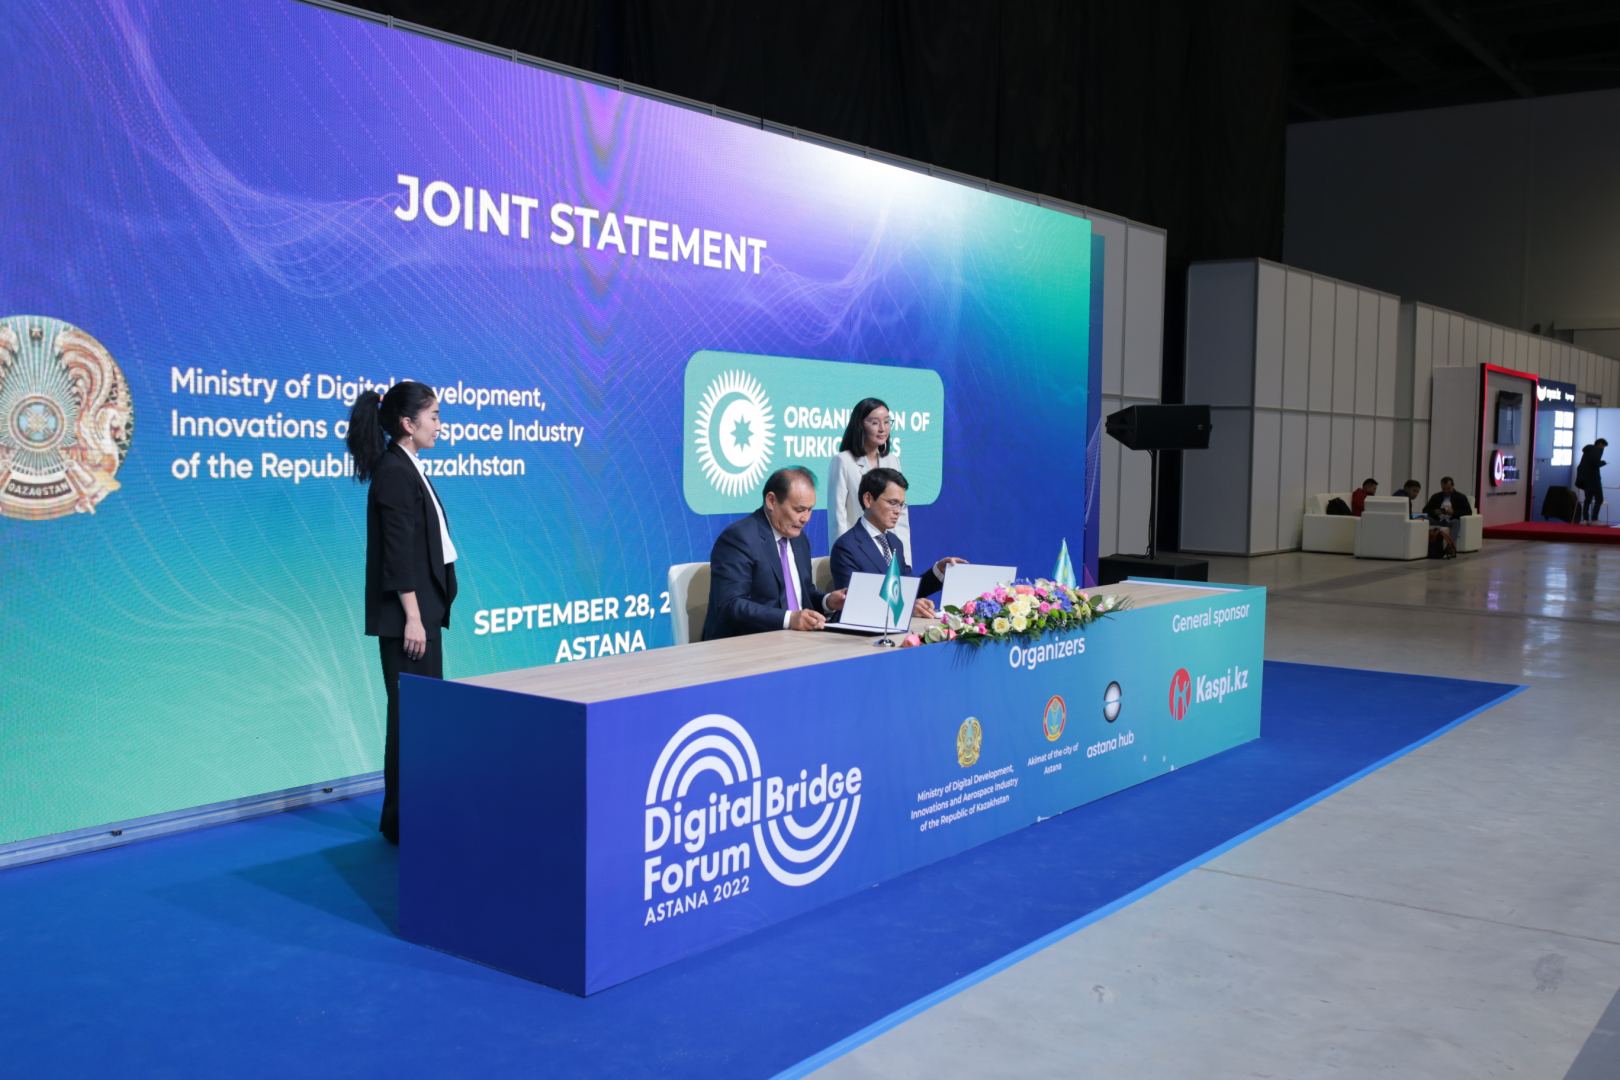 Digital Bridge-2022 стал крупнейшей IТ-площадкой года, объединившей страны Центральной Азии (ФОТО)